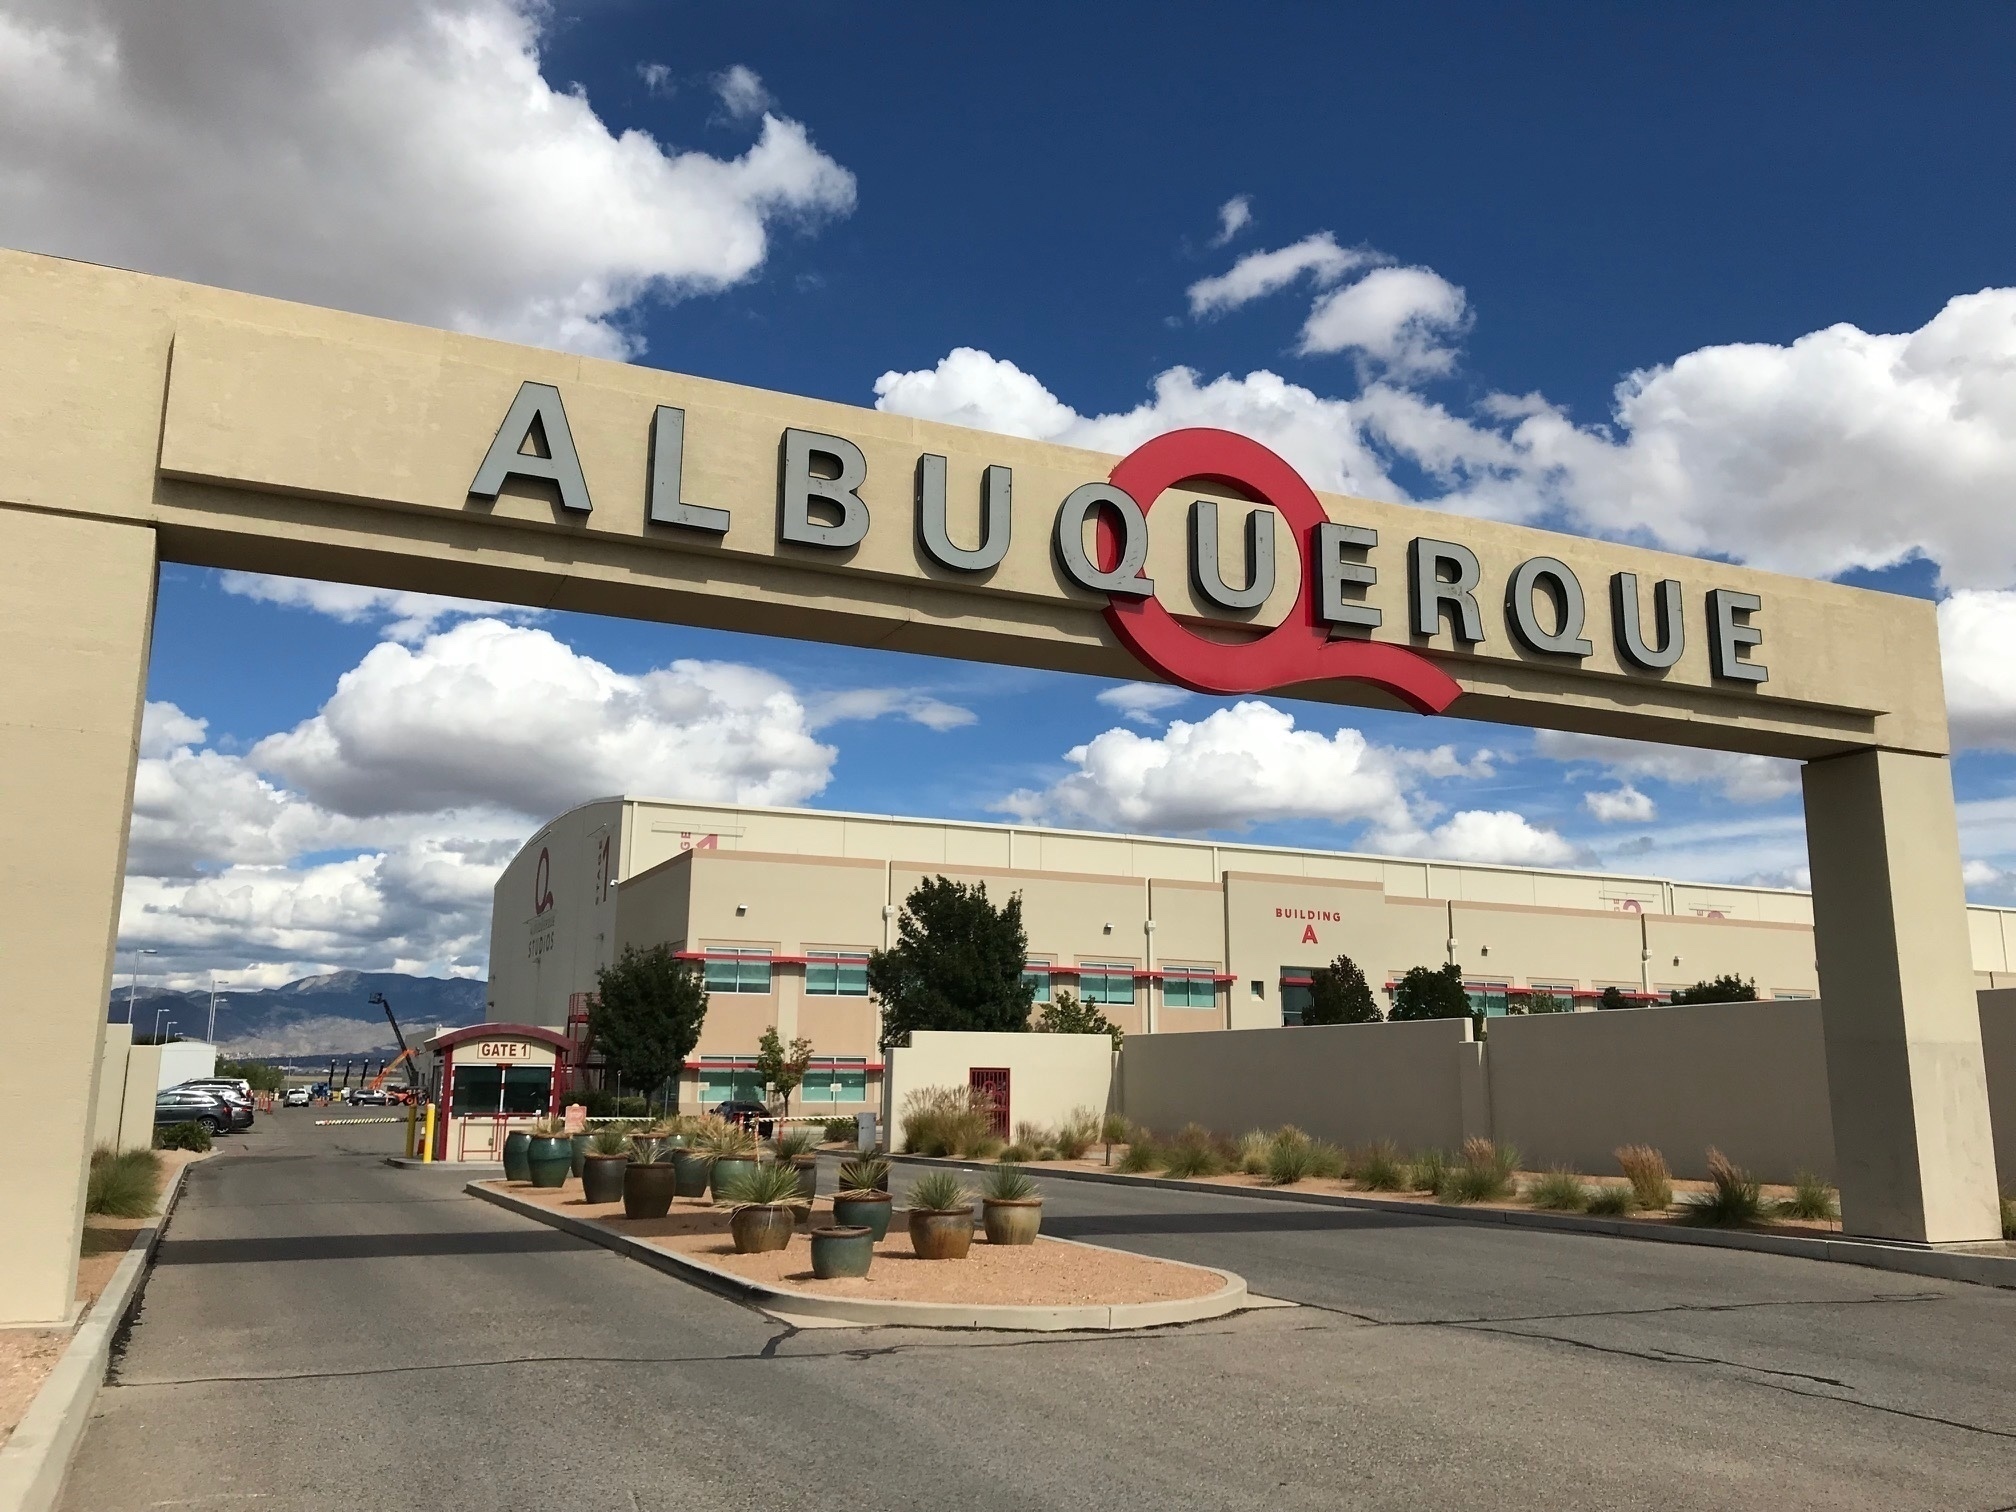 ARCHIVO - En esta fotografía de archivo del 8 de octubre de 2018, se muestra la entrada a ABQ Studios en Albuquerque, Nuevo México, donde Netflix anunció en el complejo de estudios que eligió Albuquerque como nuevo centro de producción.  Netflix promete una inversión adicional de mil millones de dólares en su centro de producción en Nuevo México.  La compañía se unió a funcionarios del gobierno el lunes 23 de noviembre de 2020 para anunciar sus planes.  La expansión agregará alrededor de 300 acres al campus existente en el extremo sur de Albuquerque, por lo que los funcionarios dicen que será una de las instalaciones de producción de películas más grandes de América del Norte.  (Foto AP / Susan Montoya Bryan, archivo)